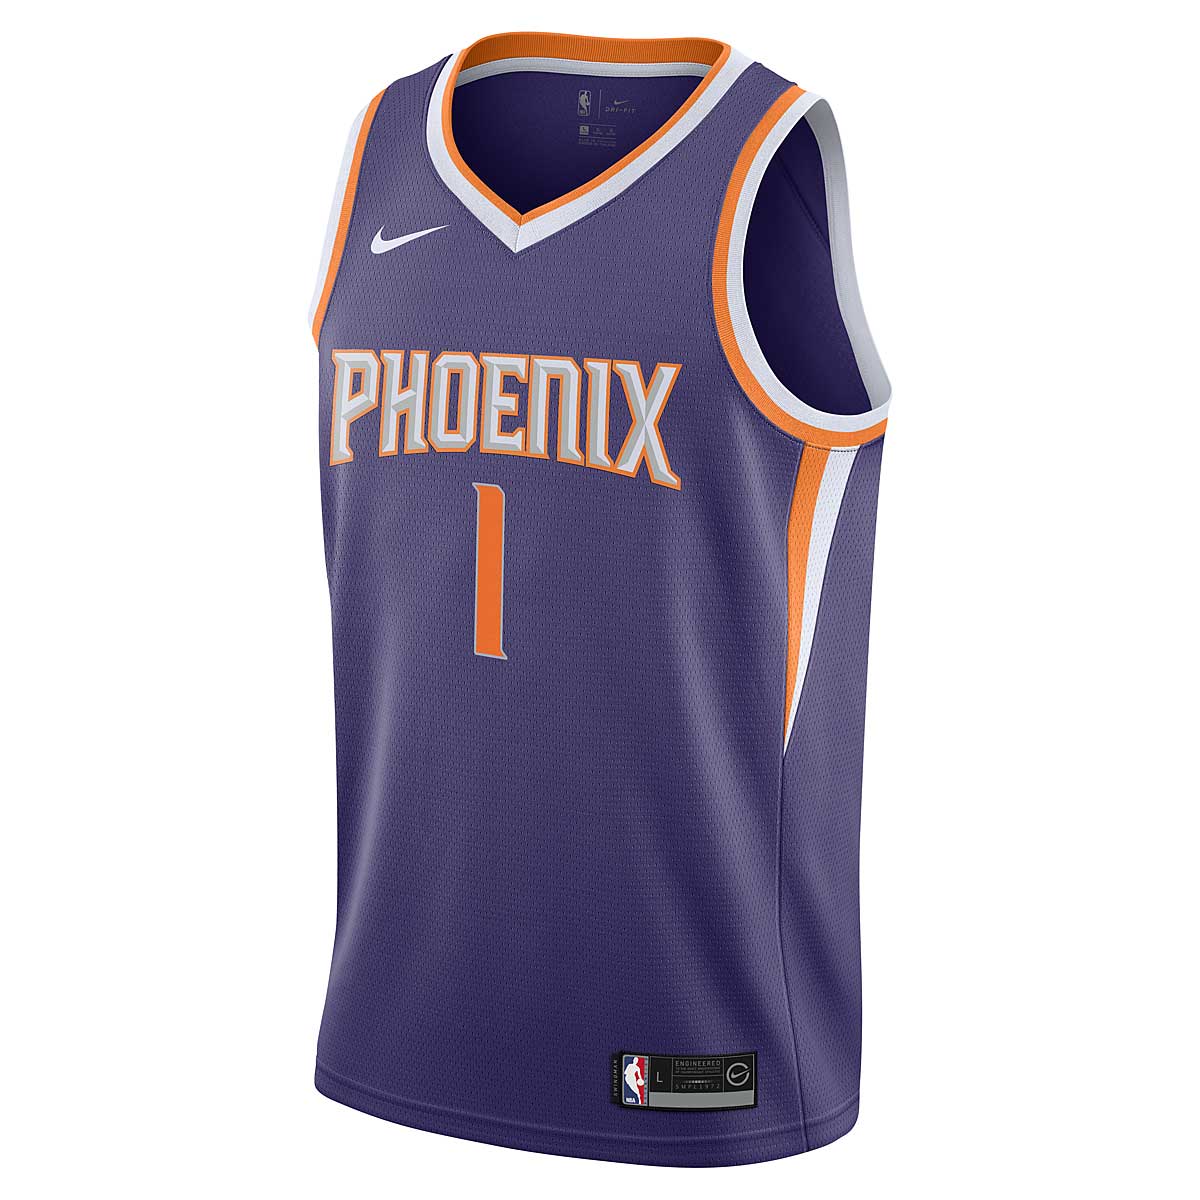 Image of Nike Kids NBA Swingman Jersey Devin Booker Phoenix Suns Kids, Purple / Orange